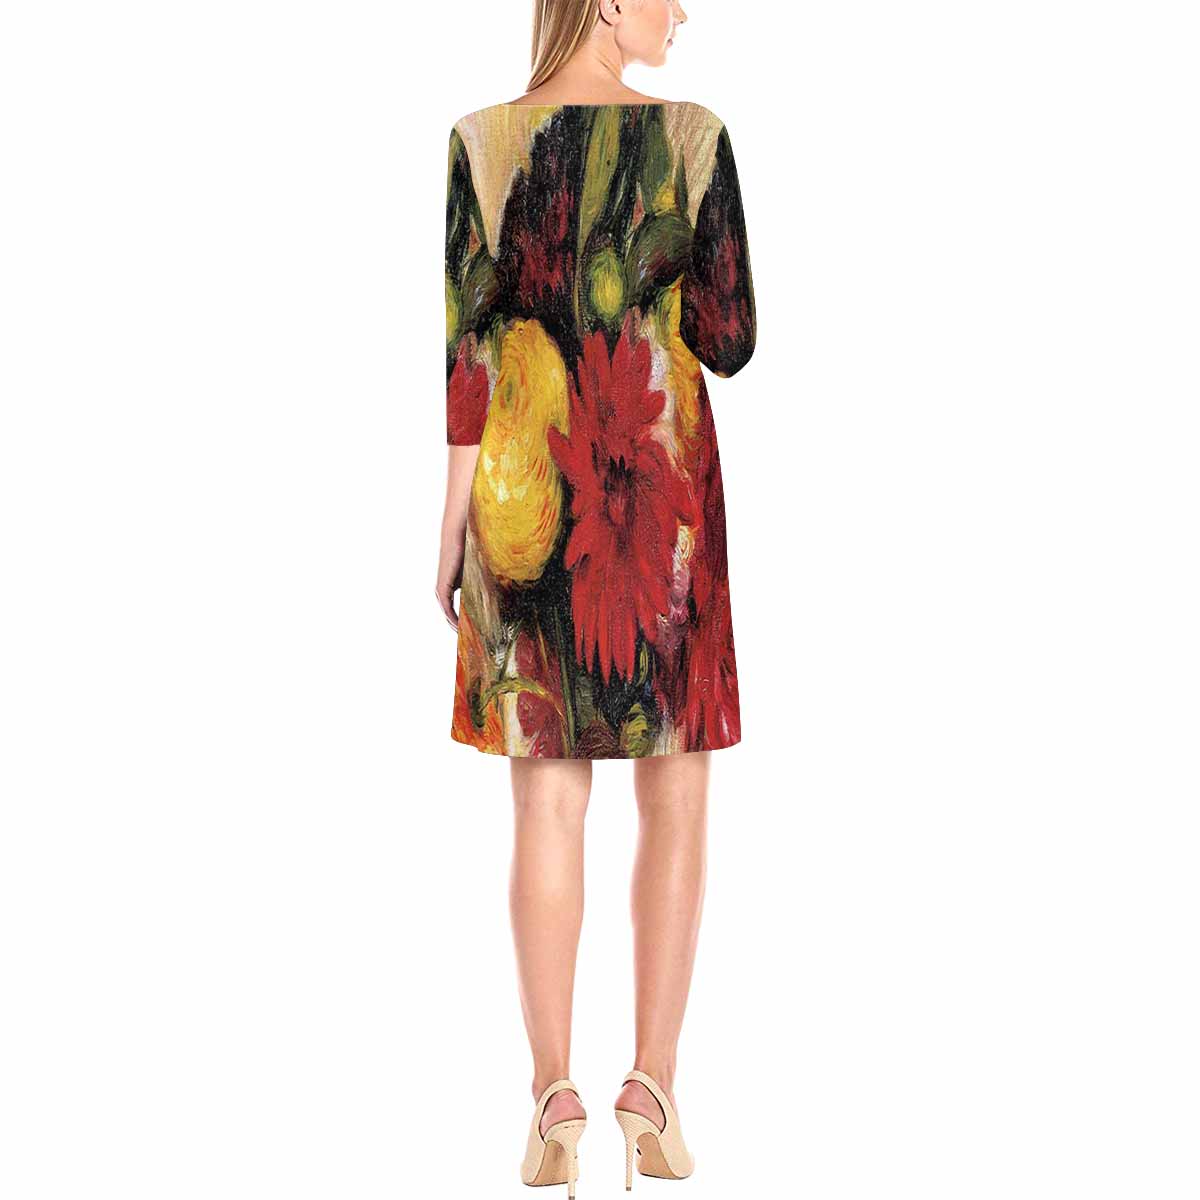 Vintage floral loose dress, model D29532 Design 25